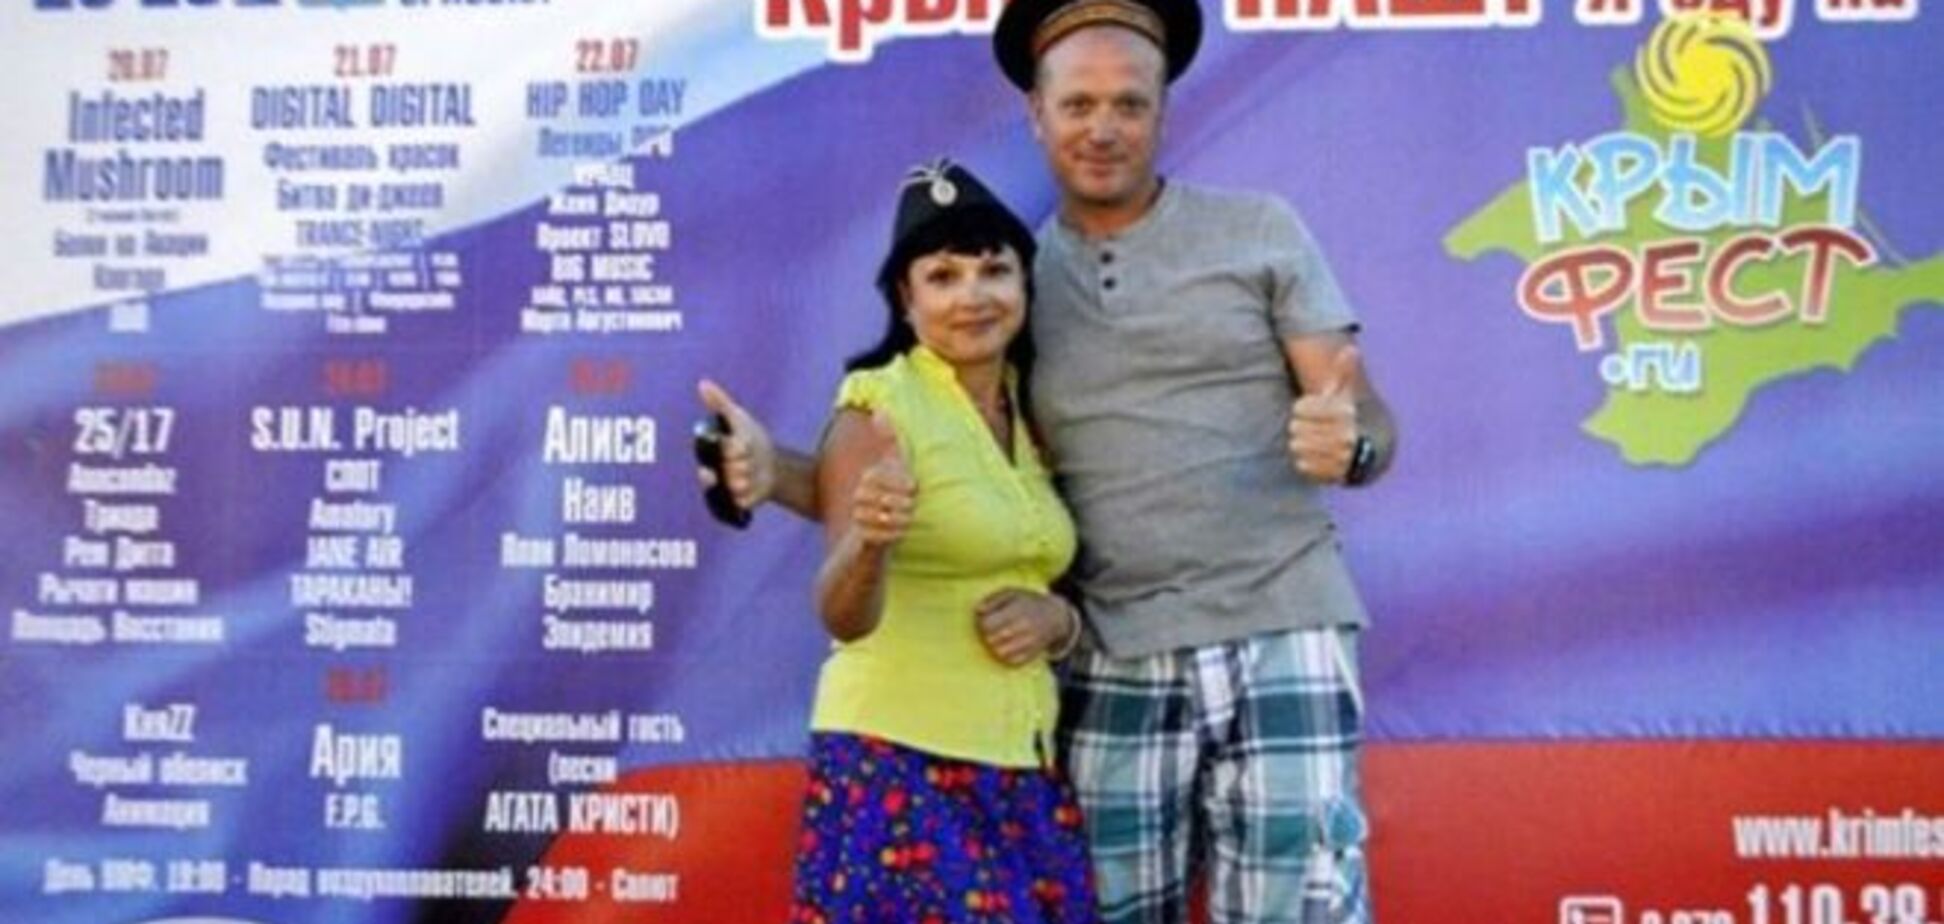 Ні цирку, ні клоунів. Фестиваль в Криму скасували через відсутність туристів